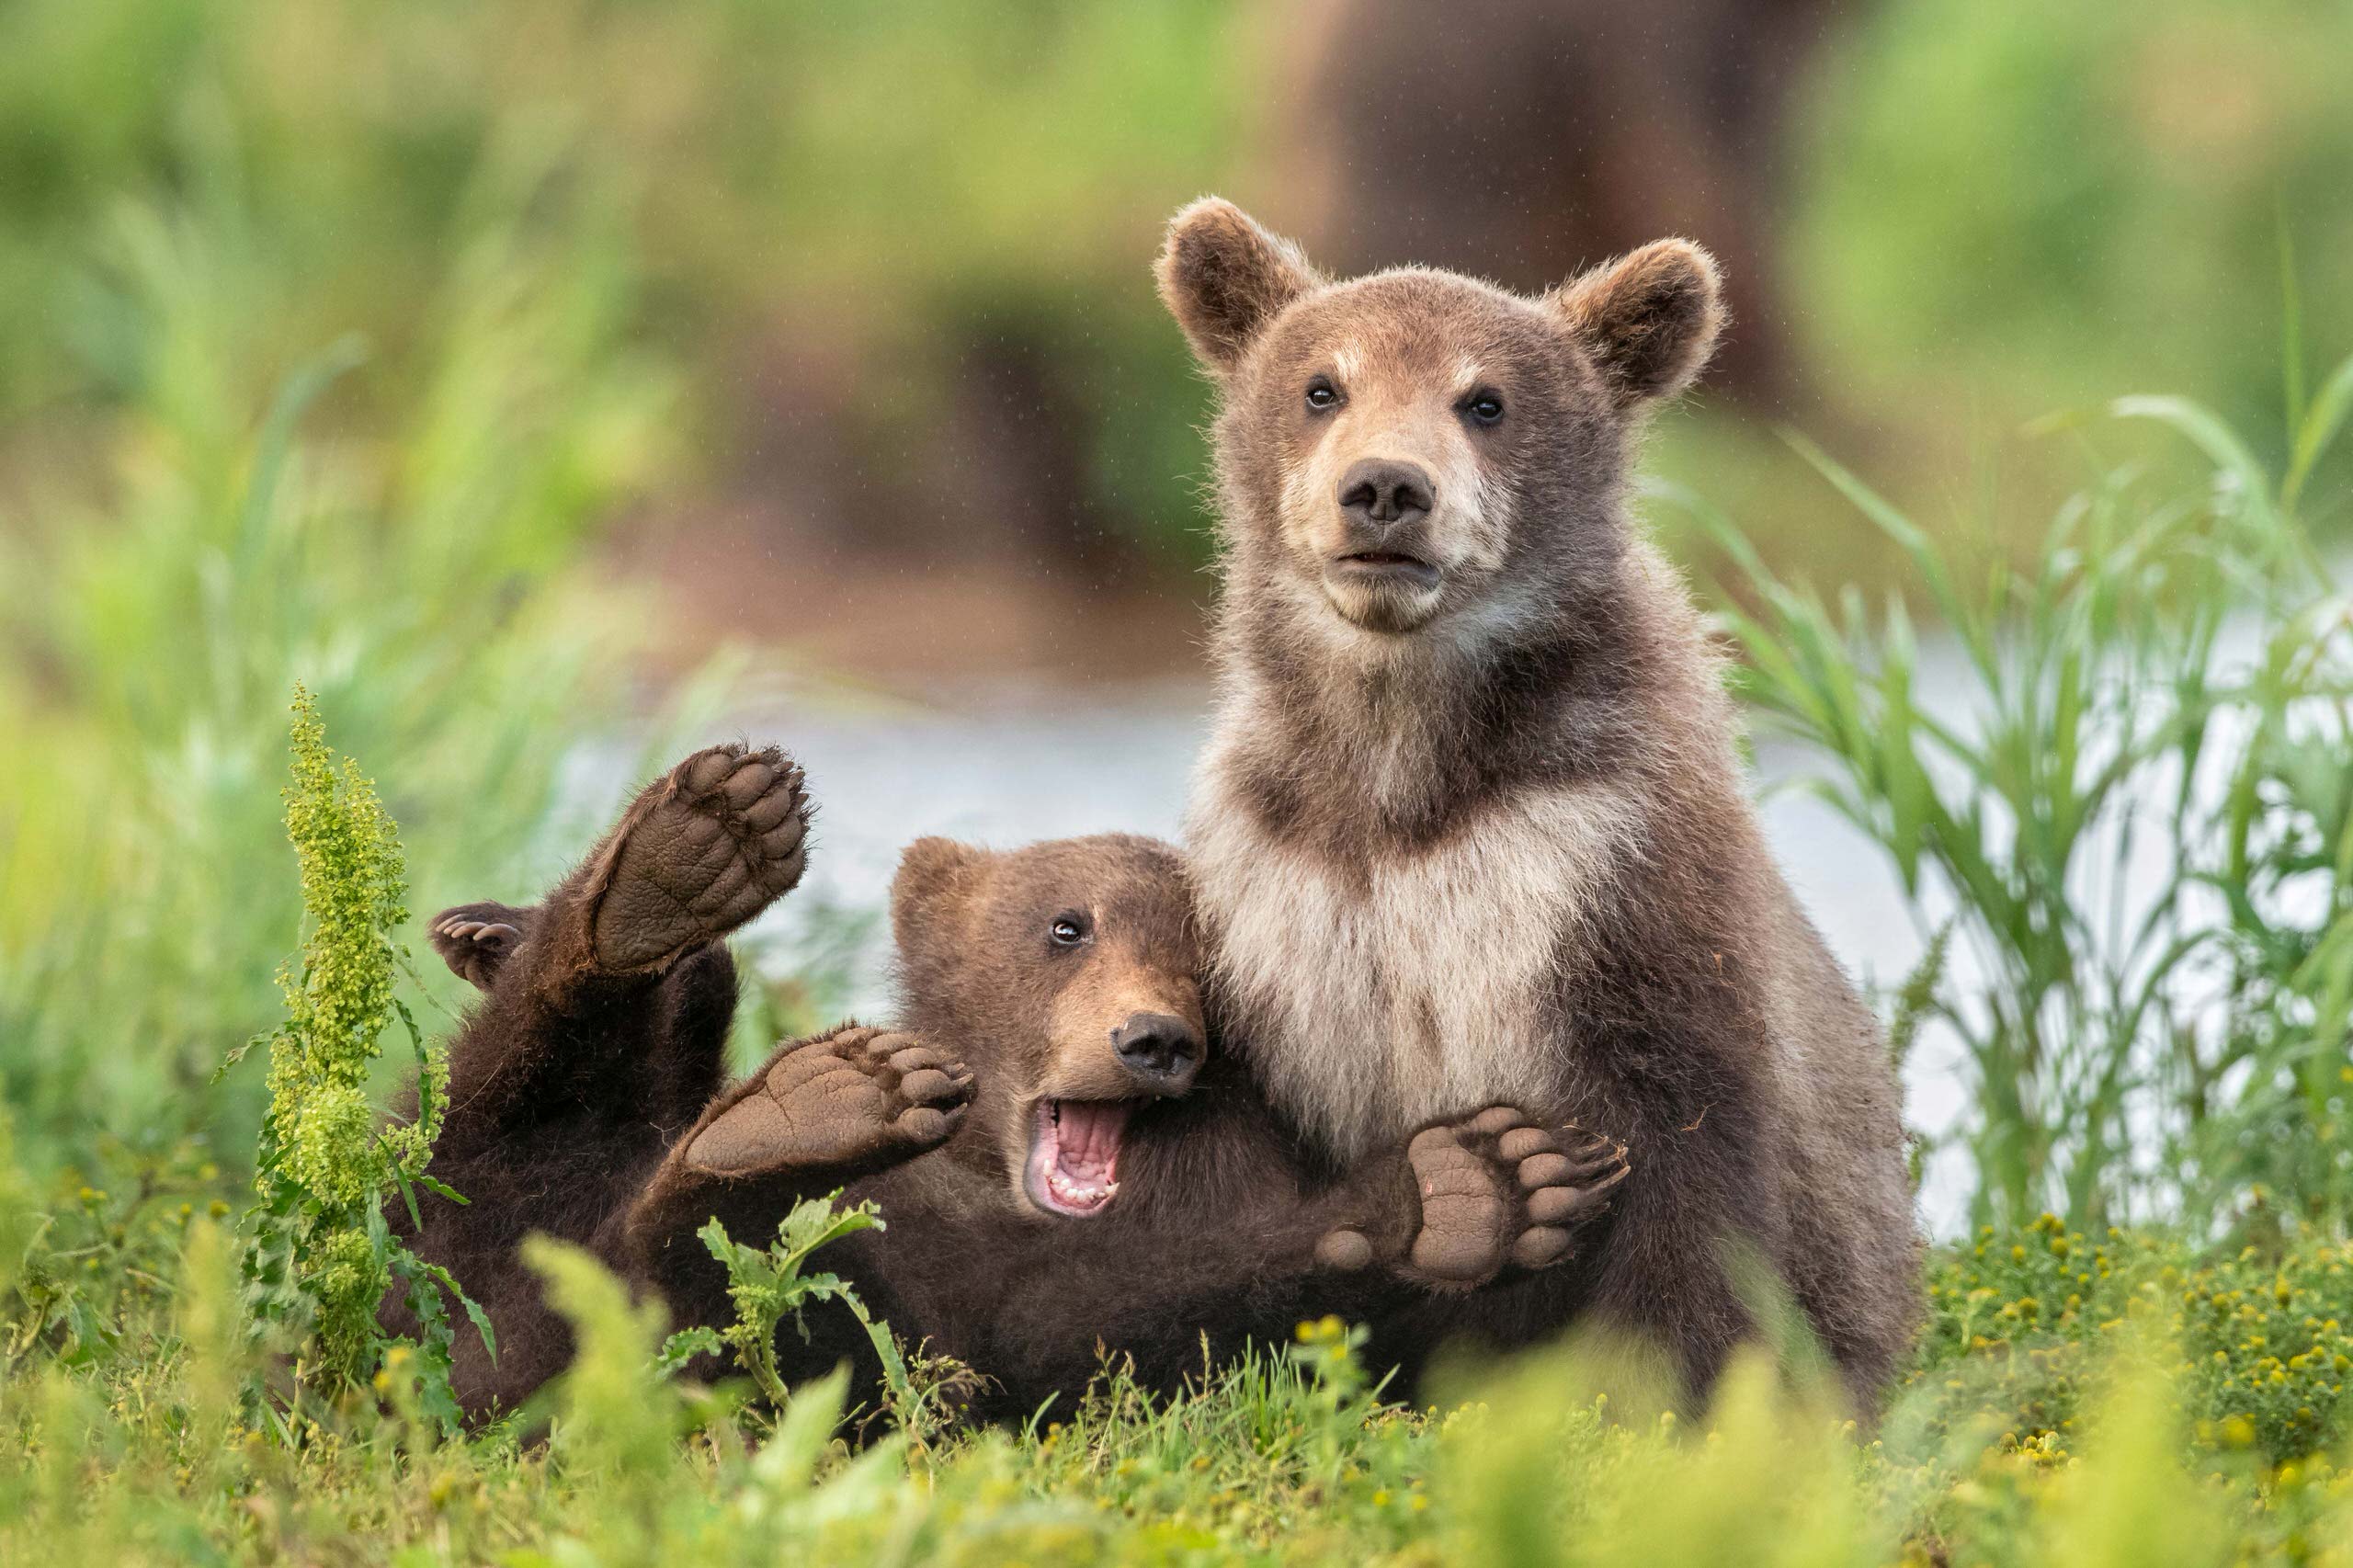 15 bức ảnh vui nhộn từ cuộc thi Comedy Wildlife Photo Awards 2020